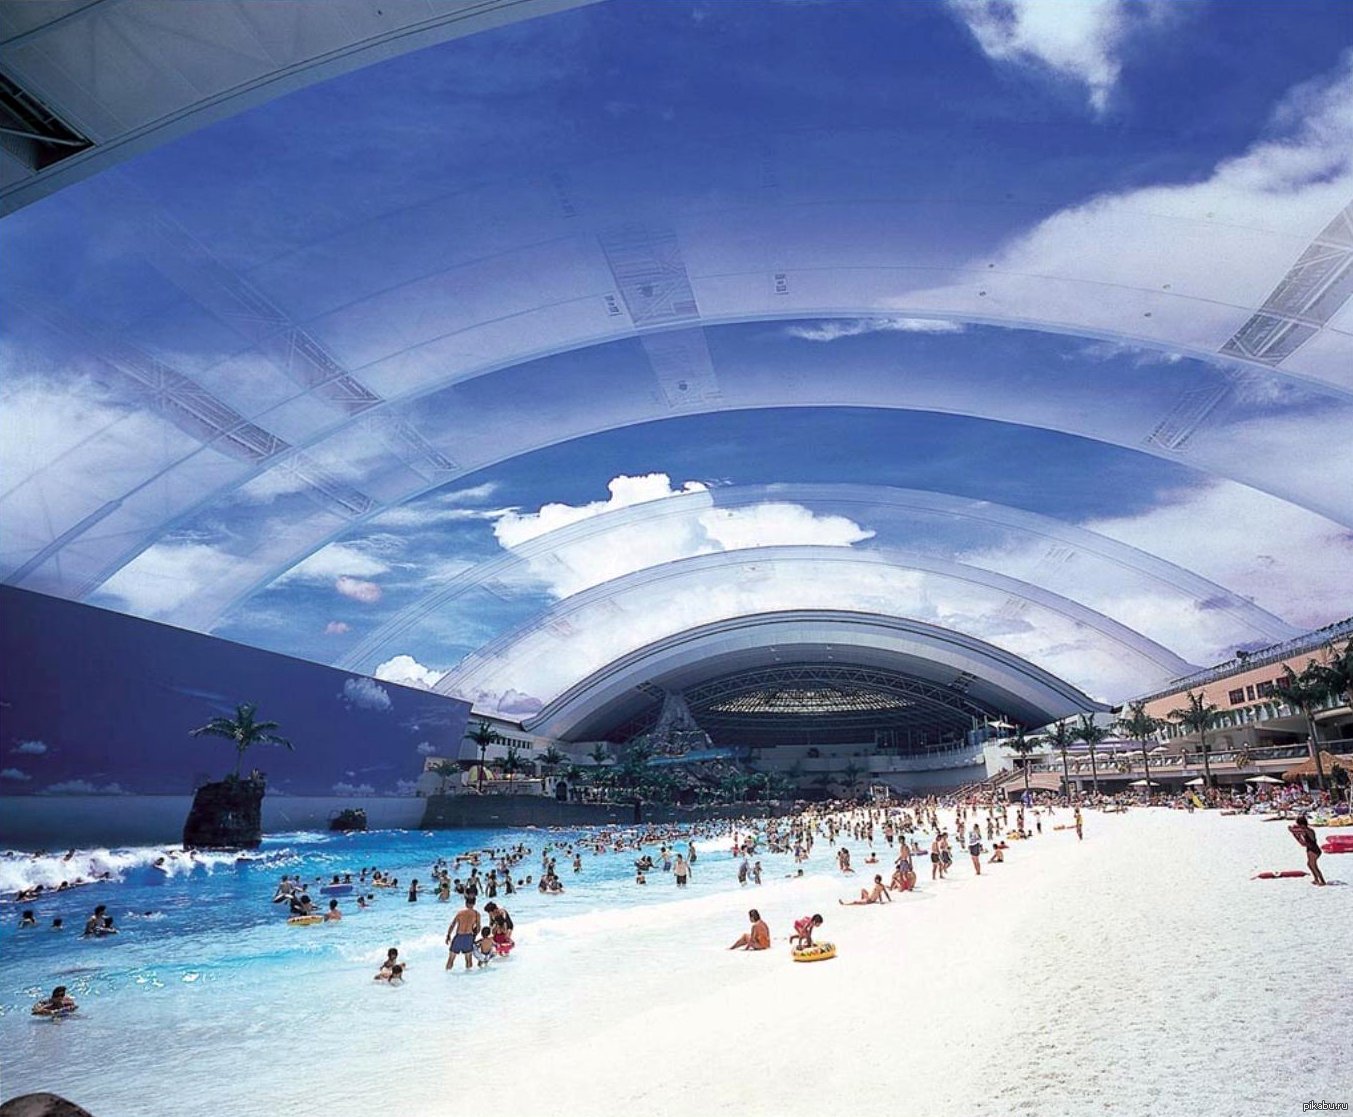 Первый бассейн в мире. Seagaia Ocean Dome аквапарк. Самый большой аквапарк Seagaia Ocean Dome. Ocean Dome в Японии. Океанский купол «Ocean Dome».